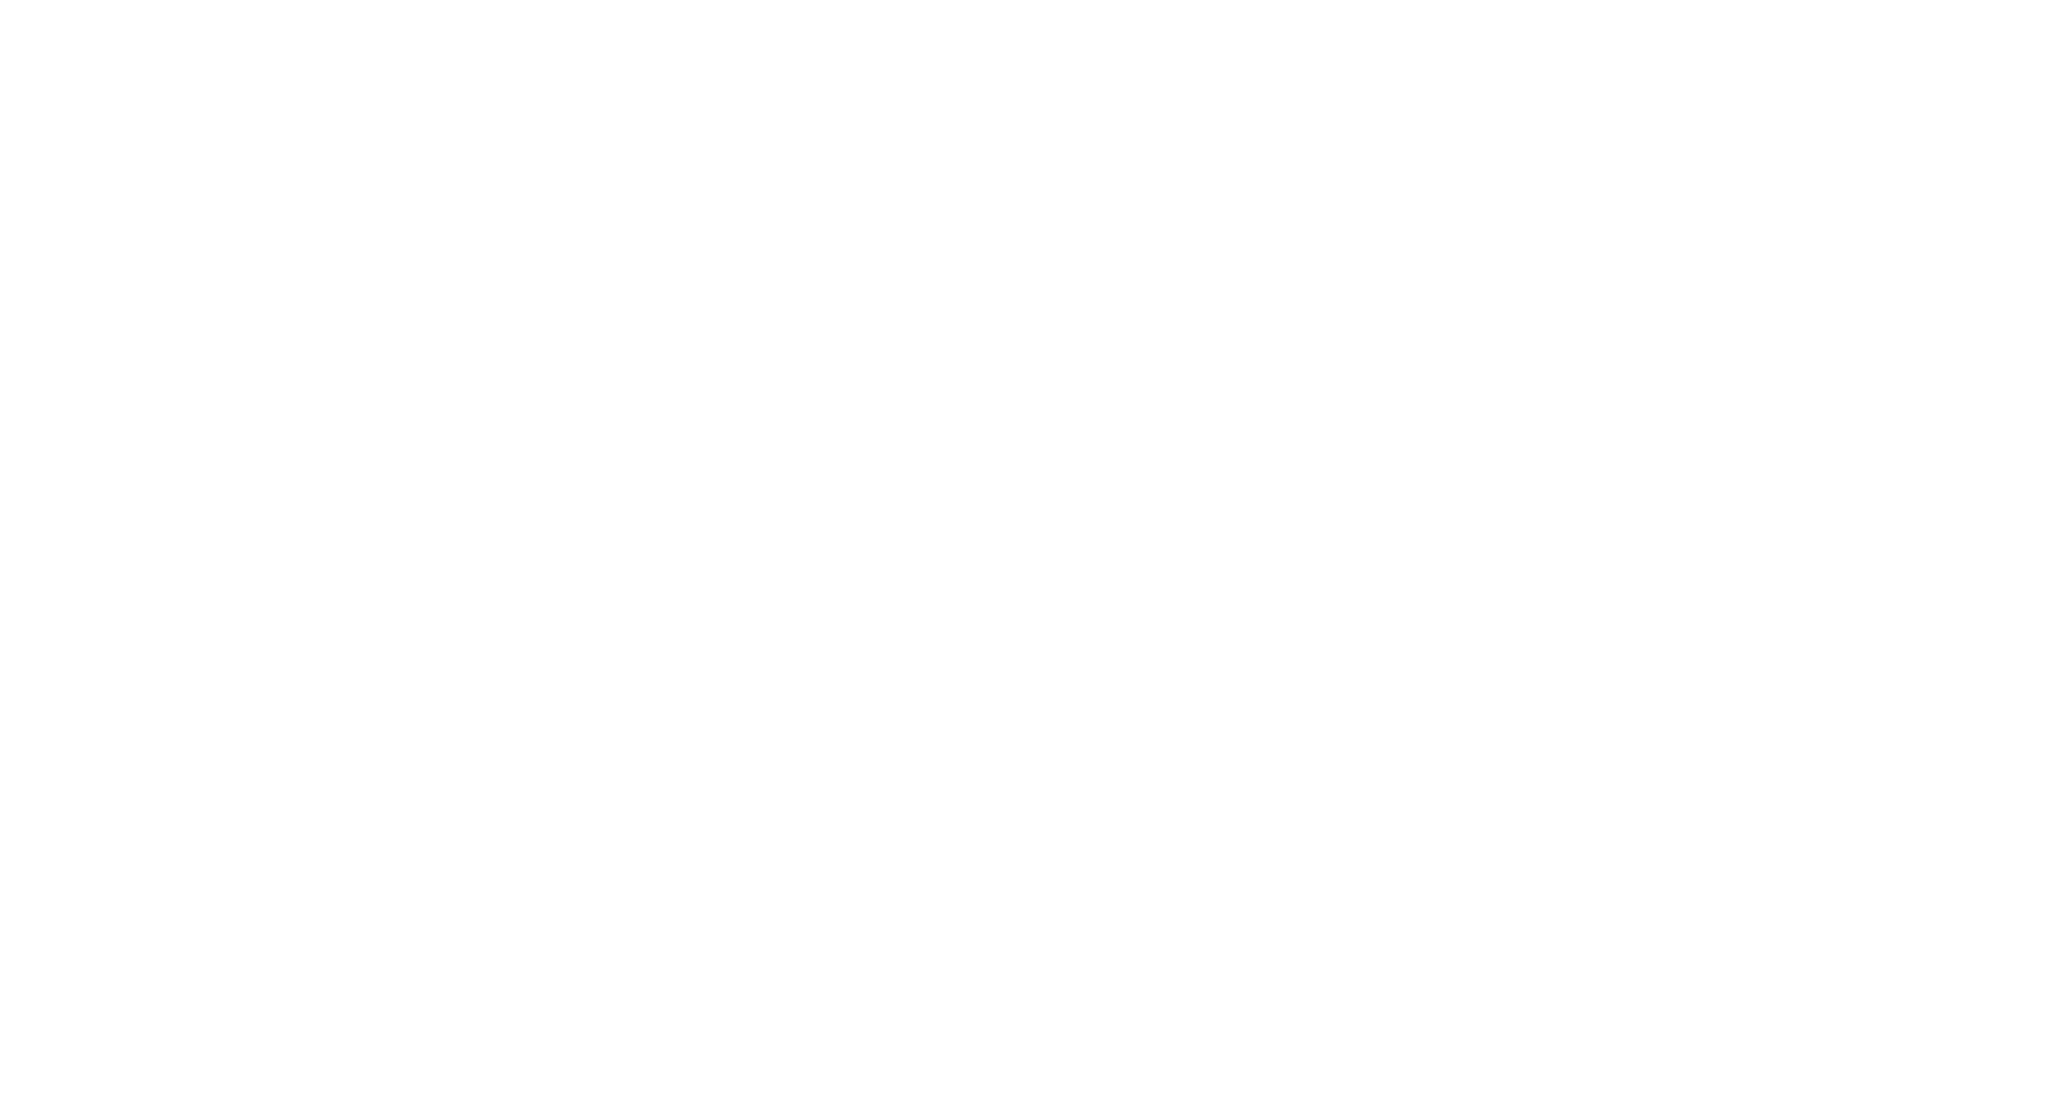 ifood-logo-01.png